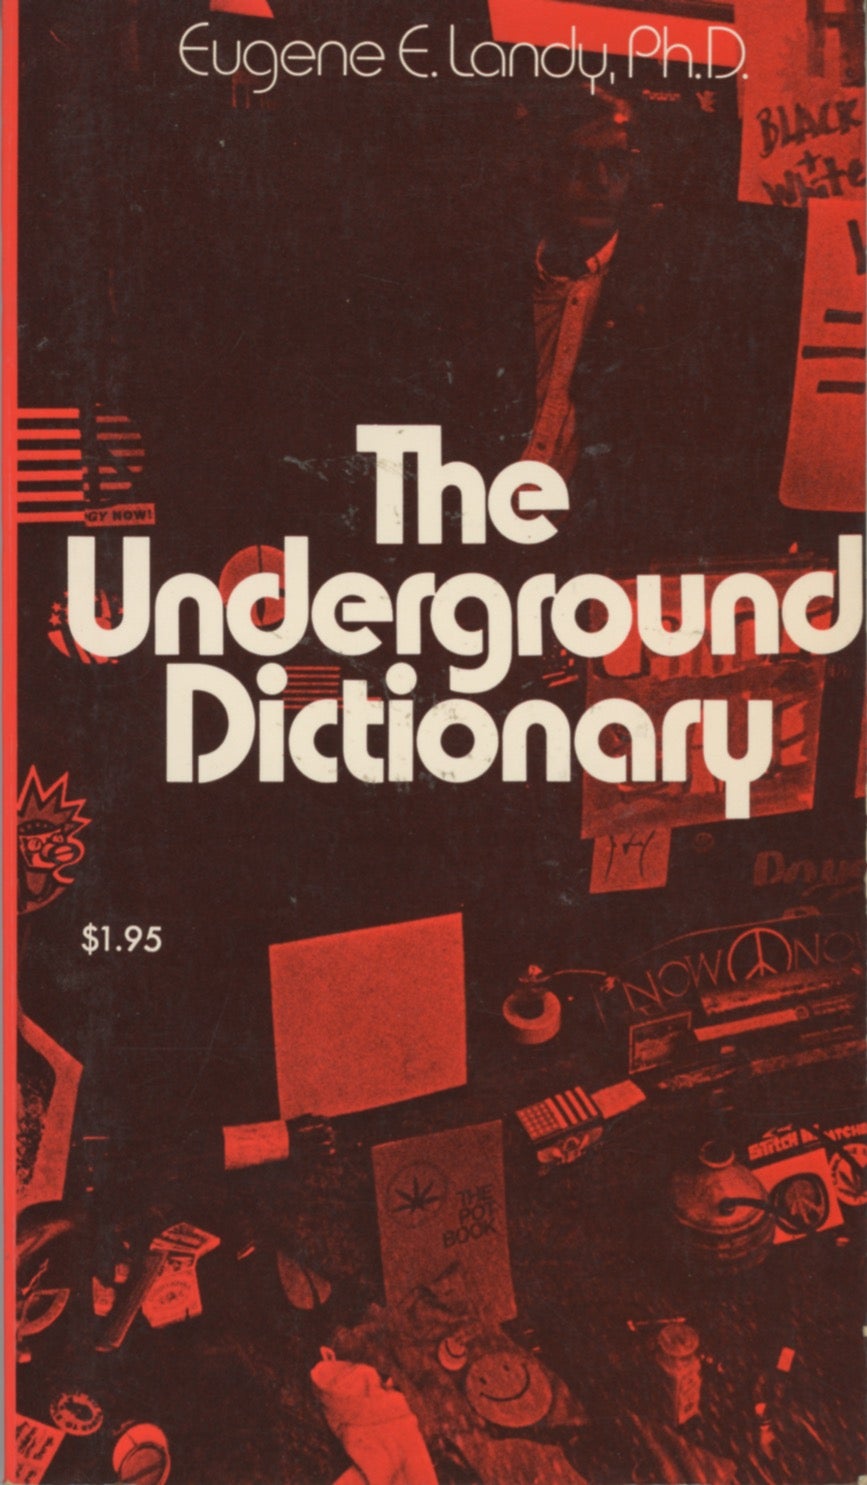 Urban Dictionary on X: @AnnaInDaSky Urban Dictionary: A site